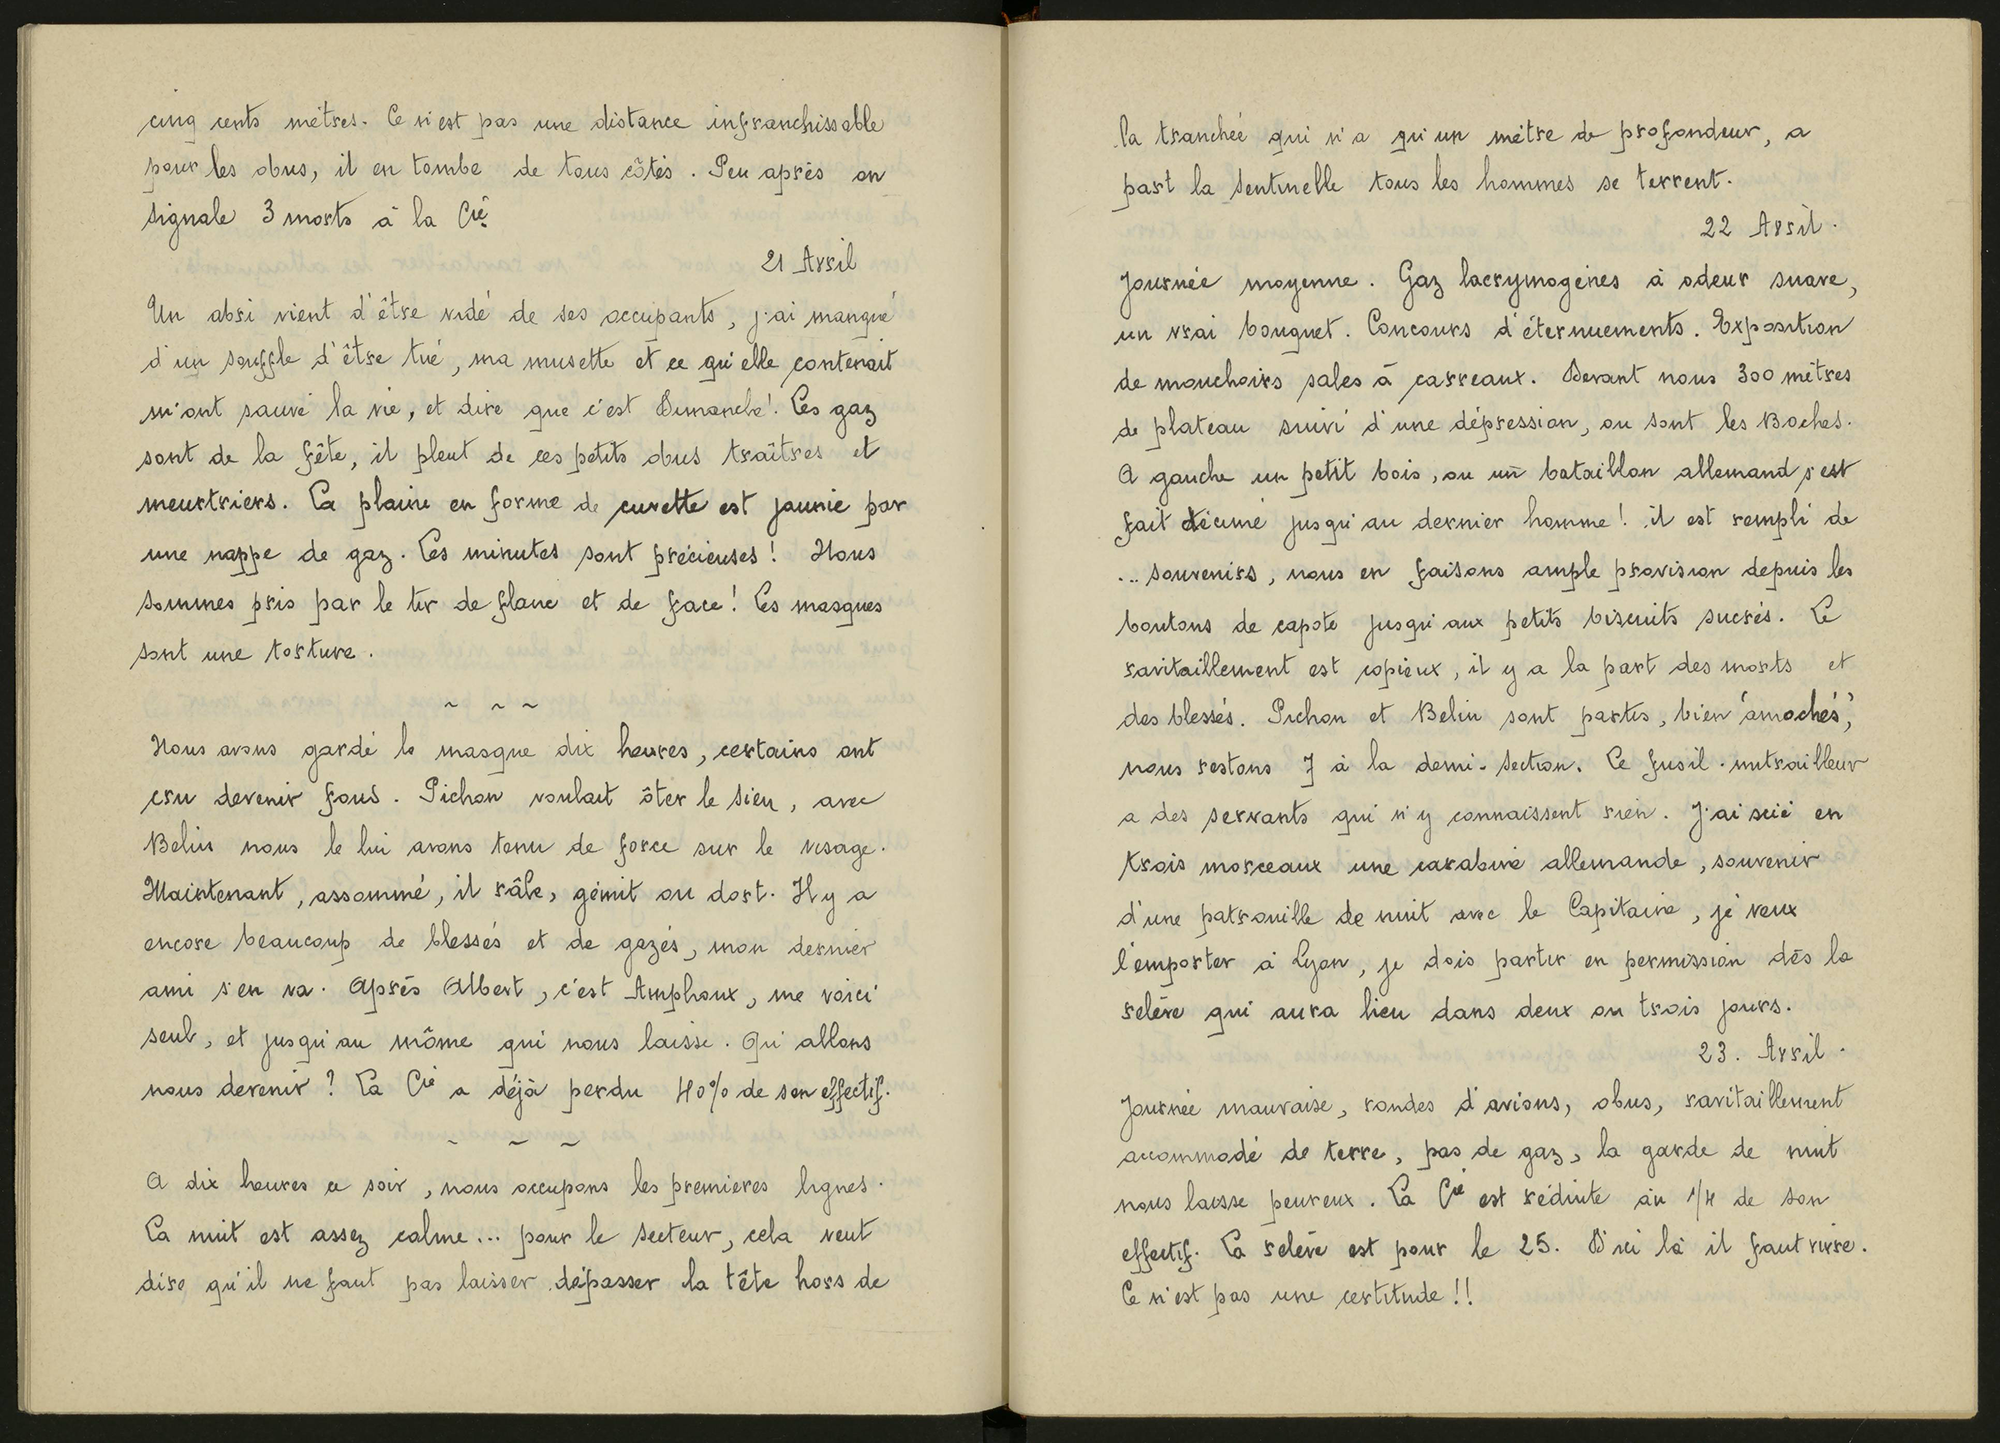 Journal de Joseph Rossignol, 21 avril 1917 - 1ii/593